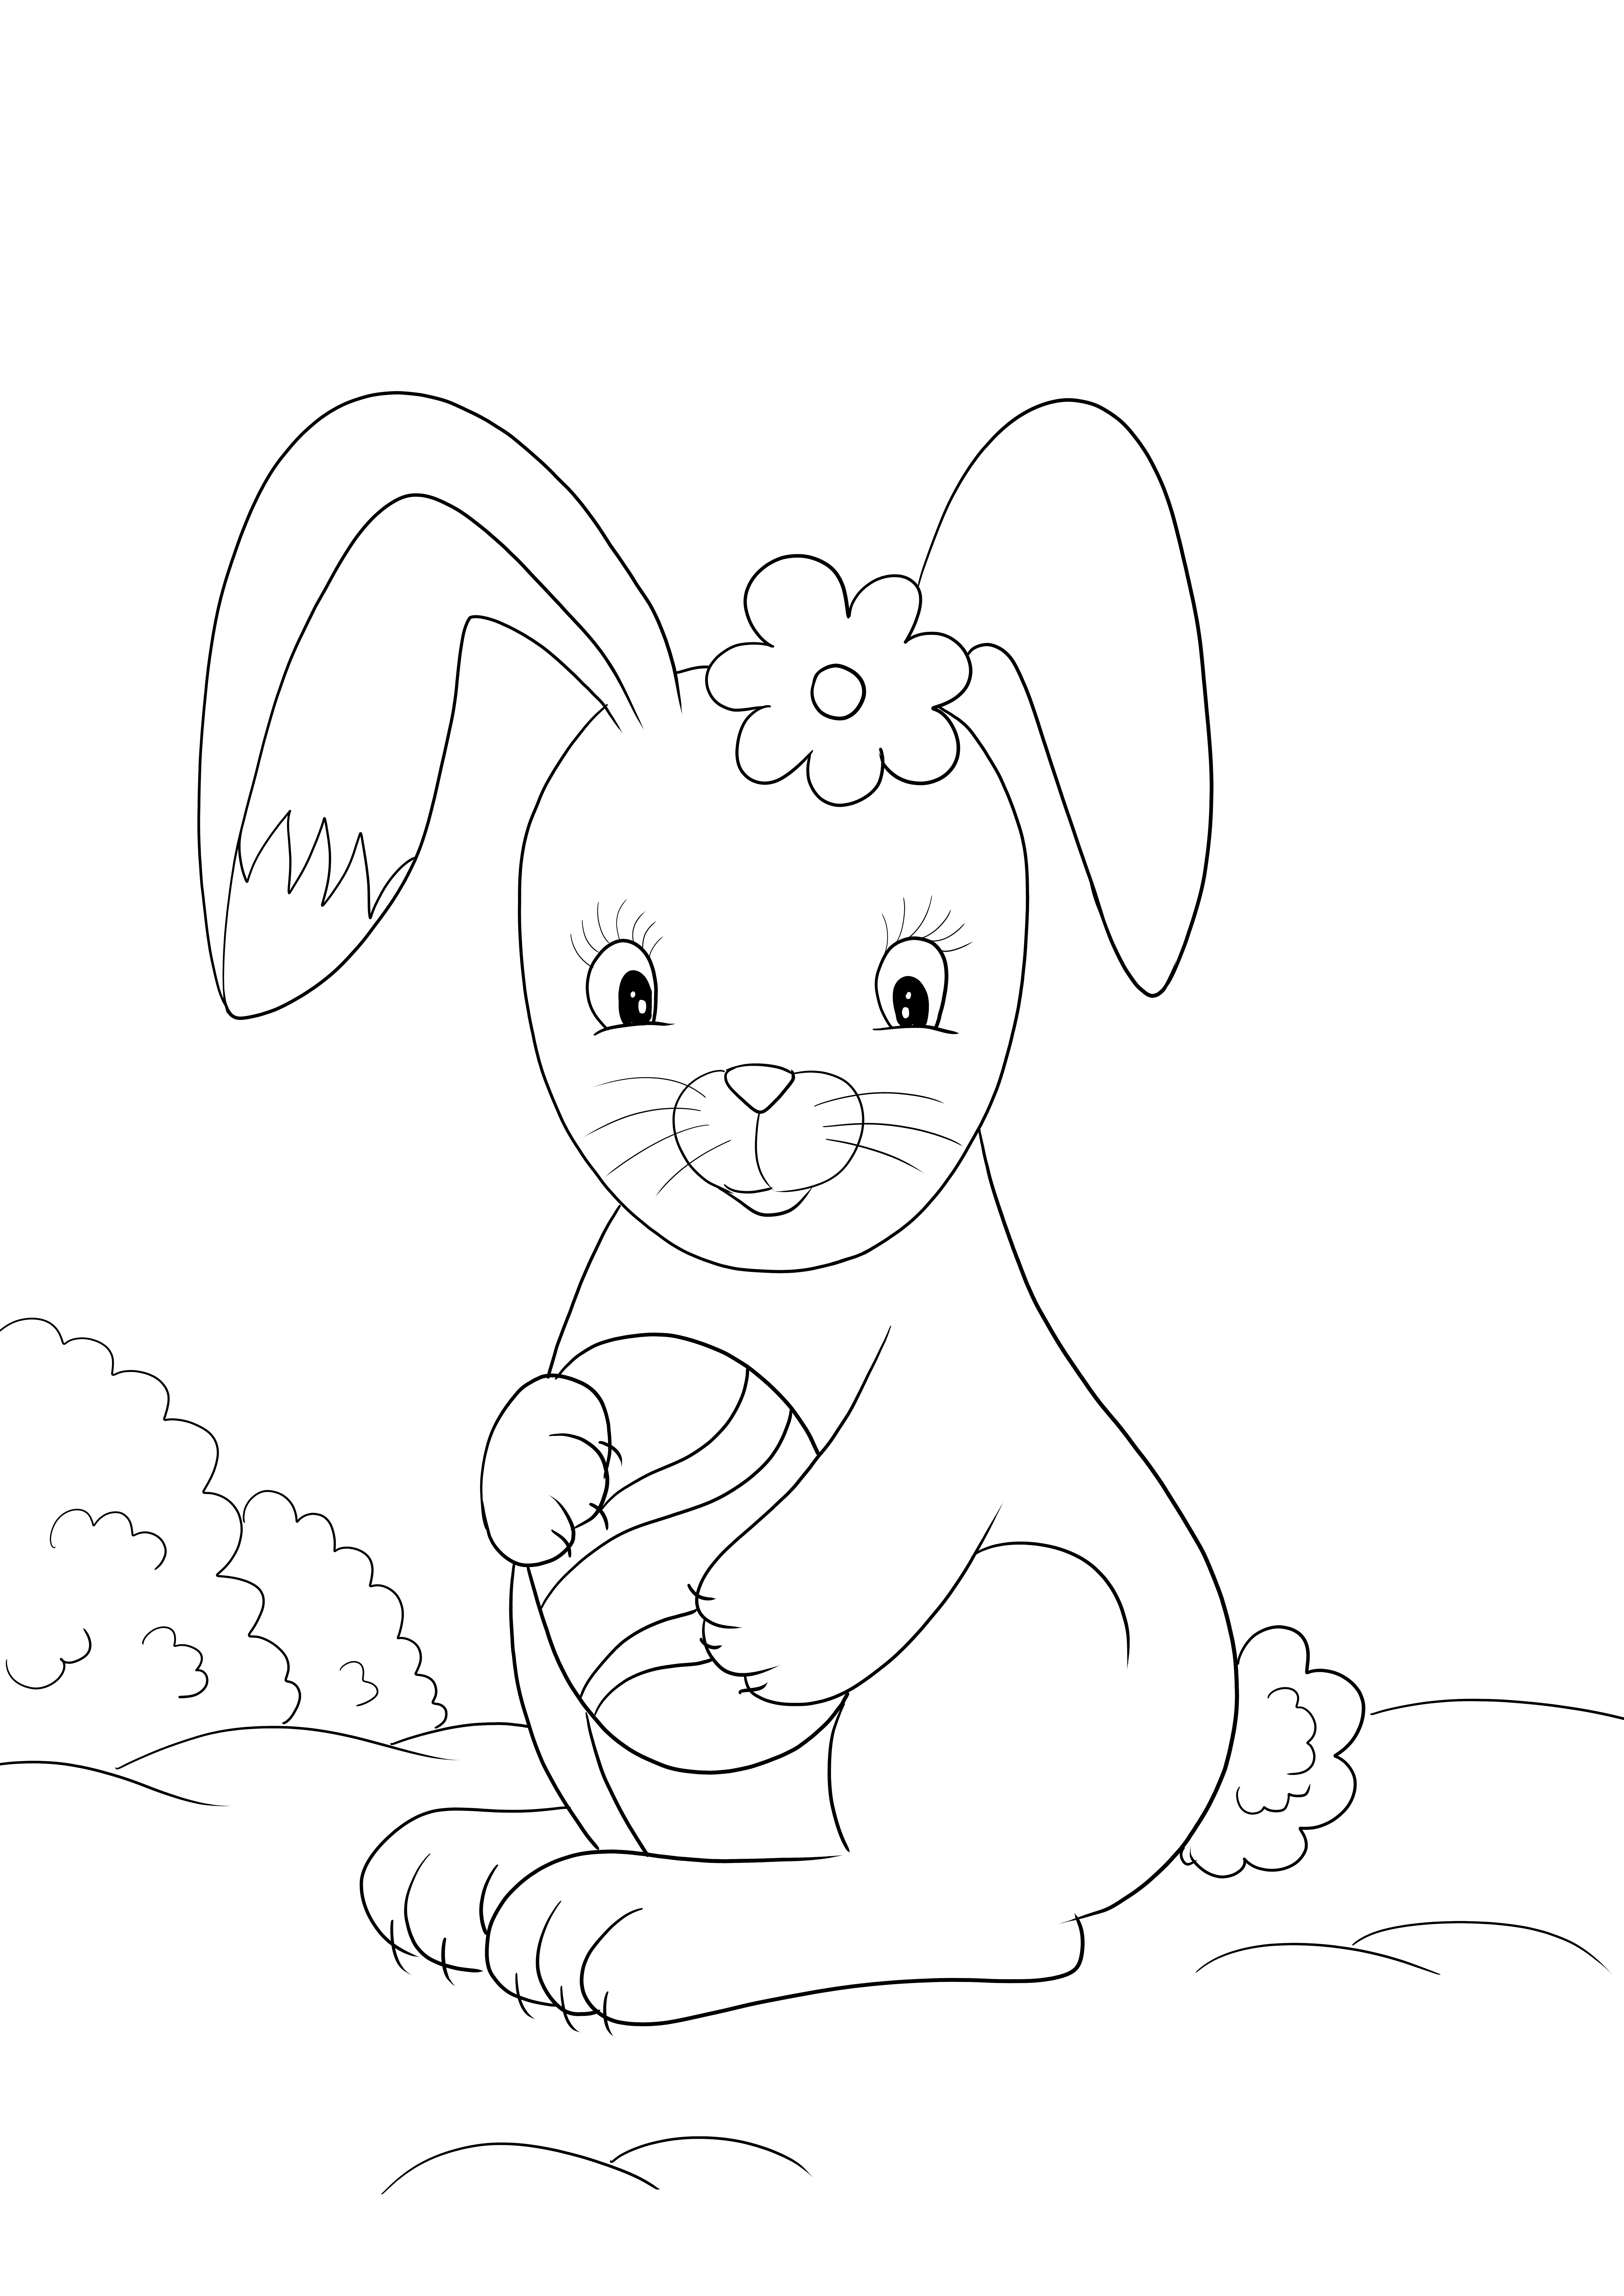 Image de coloriage mignon lapin de Pâques à télécharger ou imprimer gratuitement